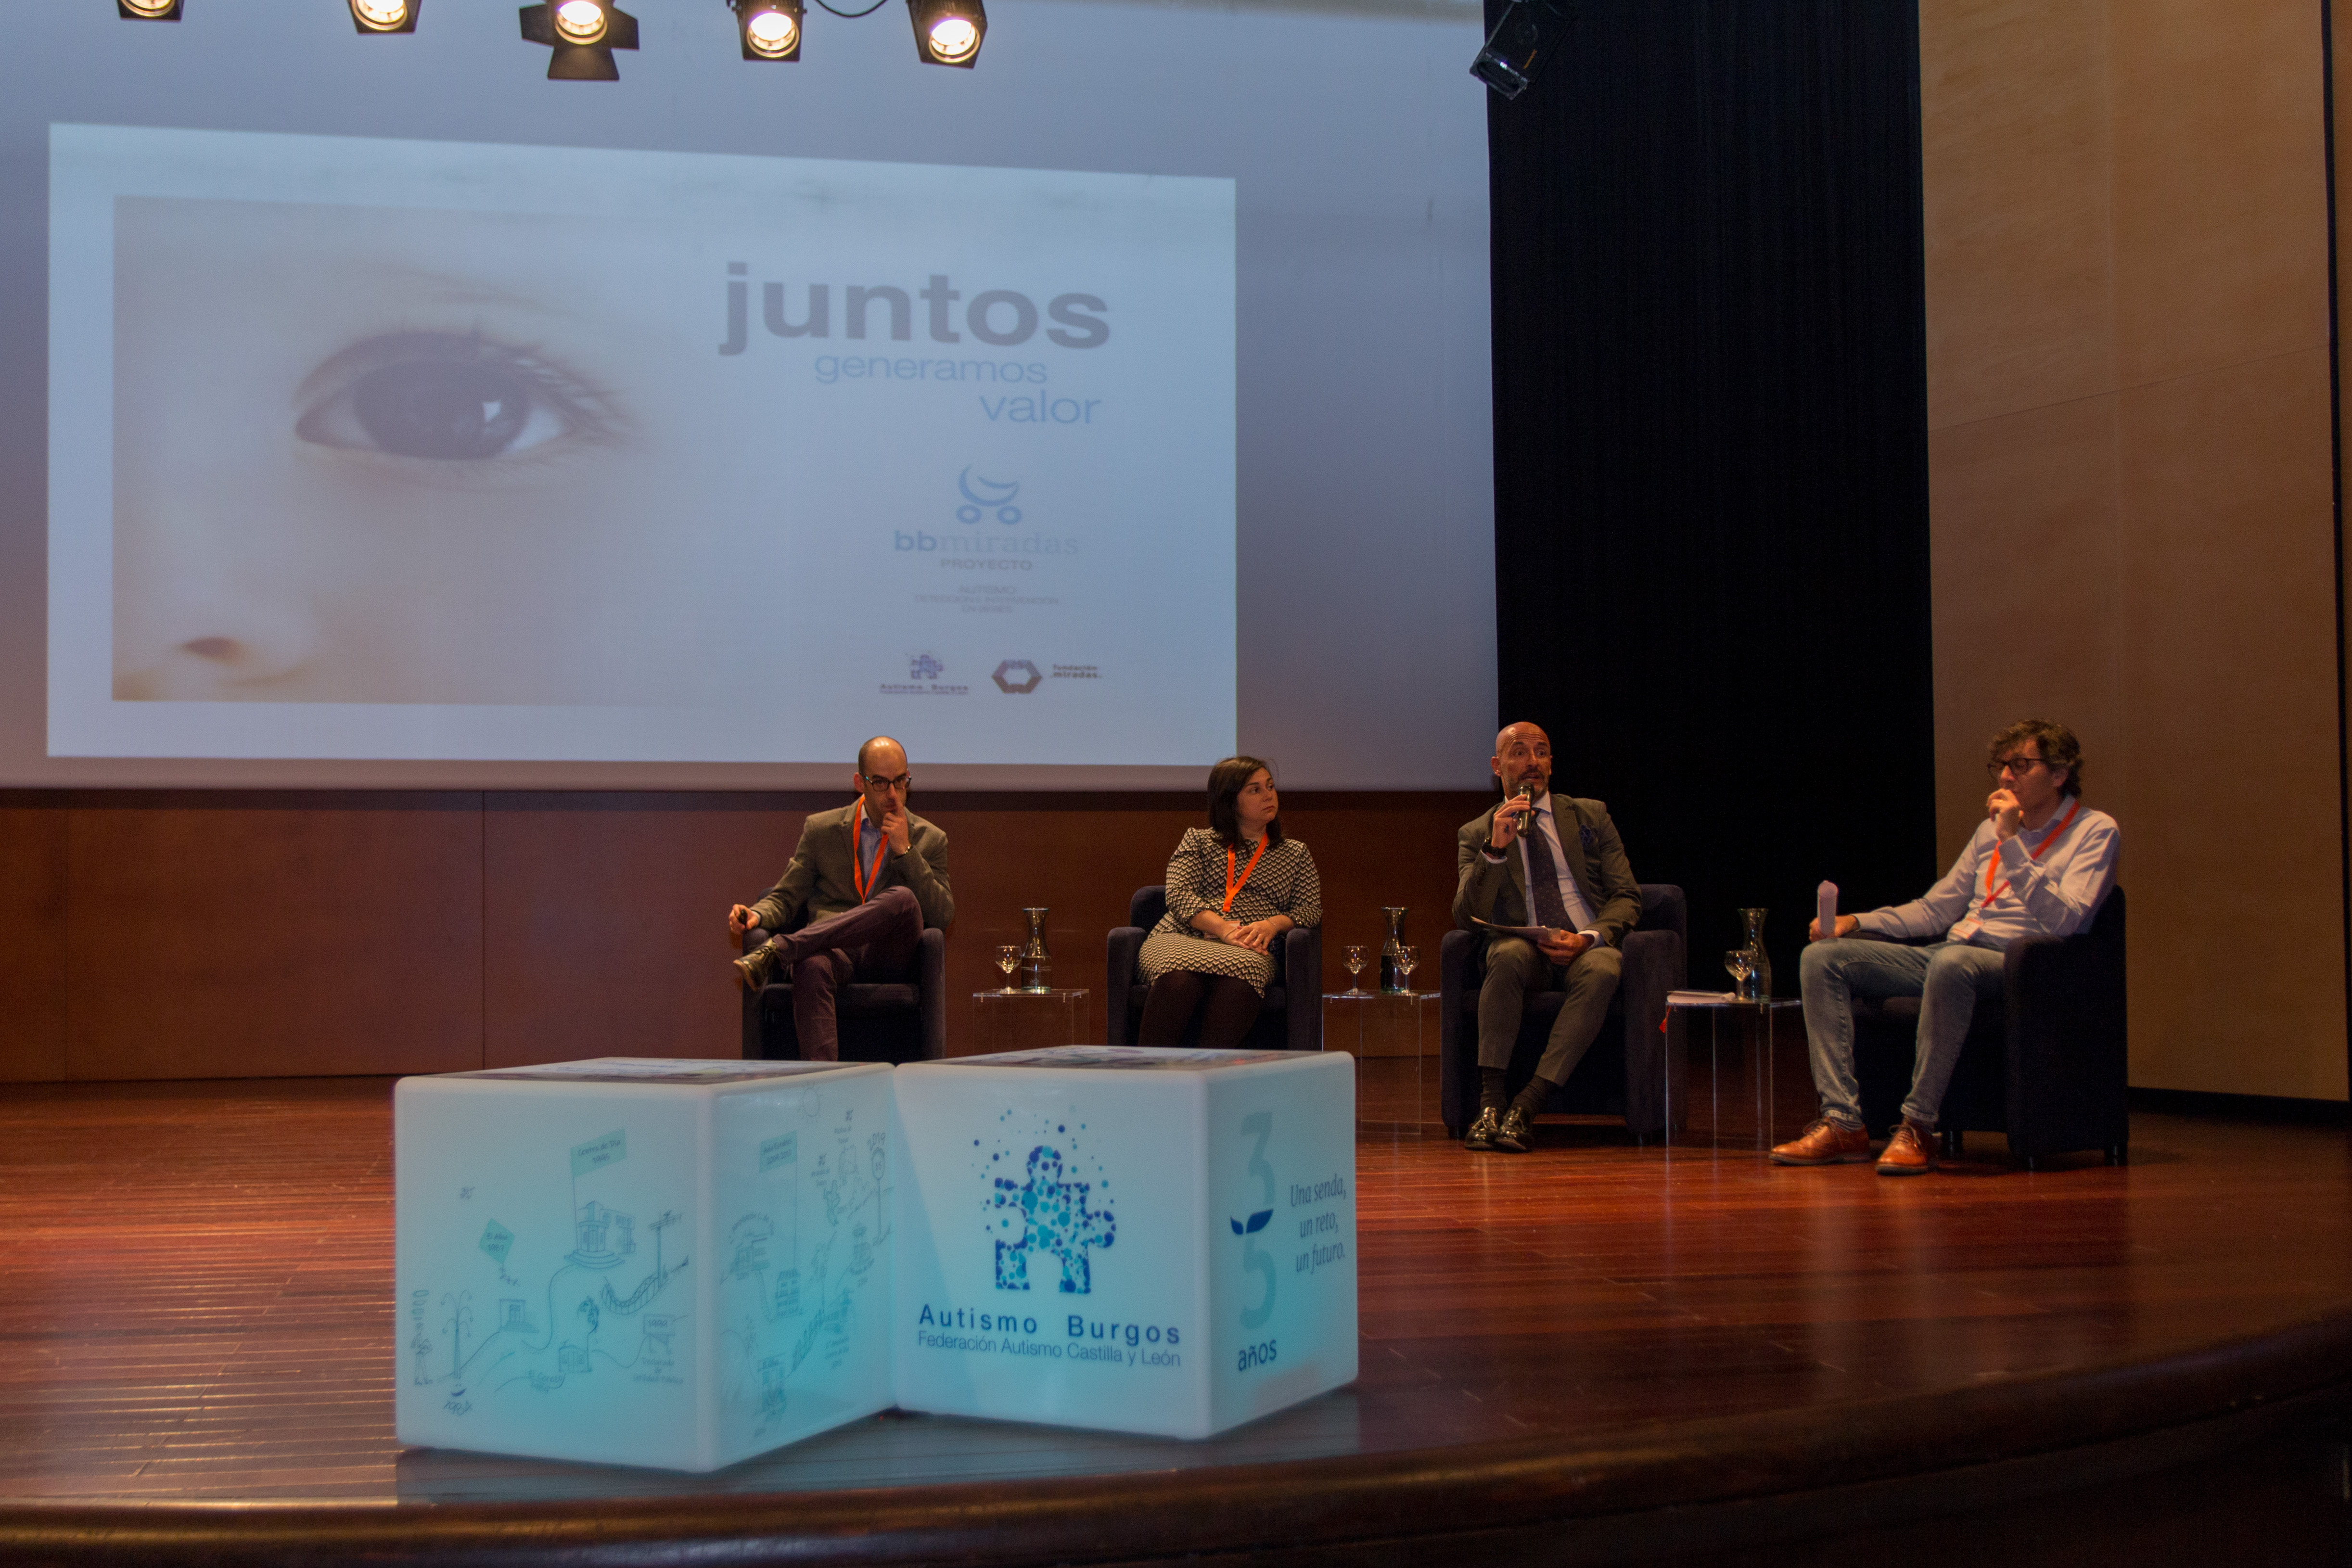 bbMiradas en el Congreso 35 Aniversario de Autismo Burgos